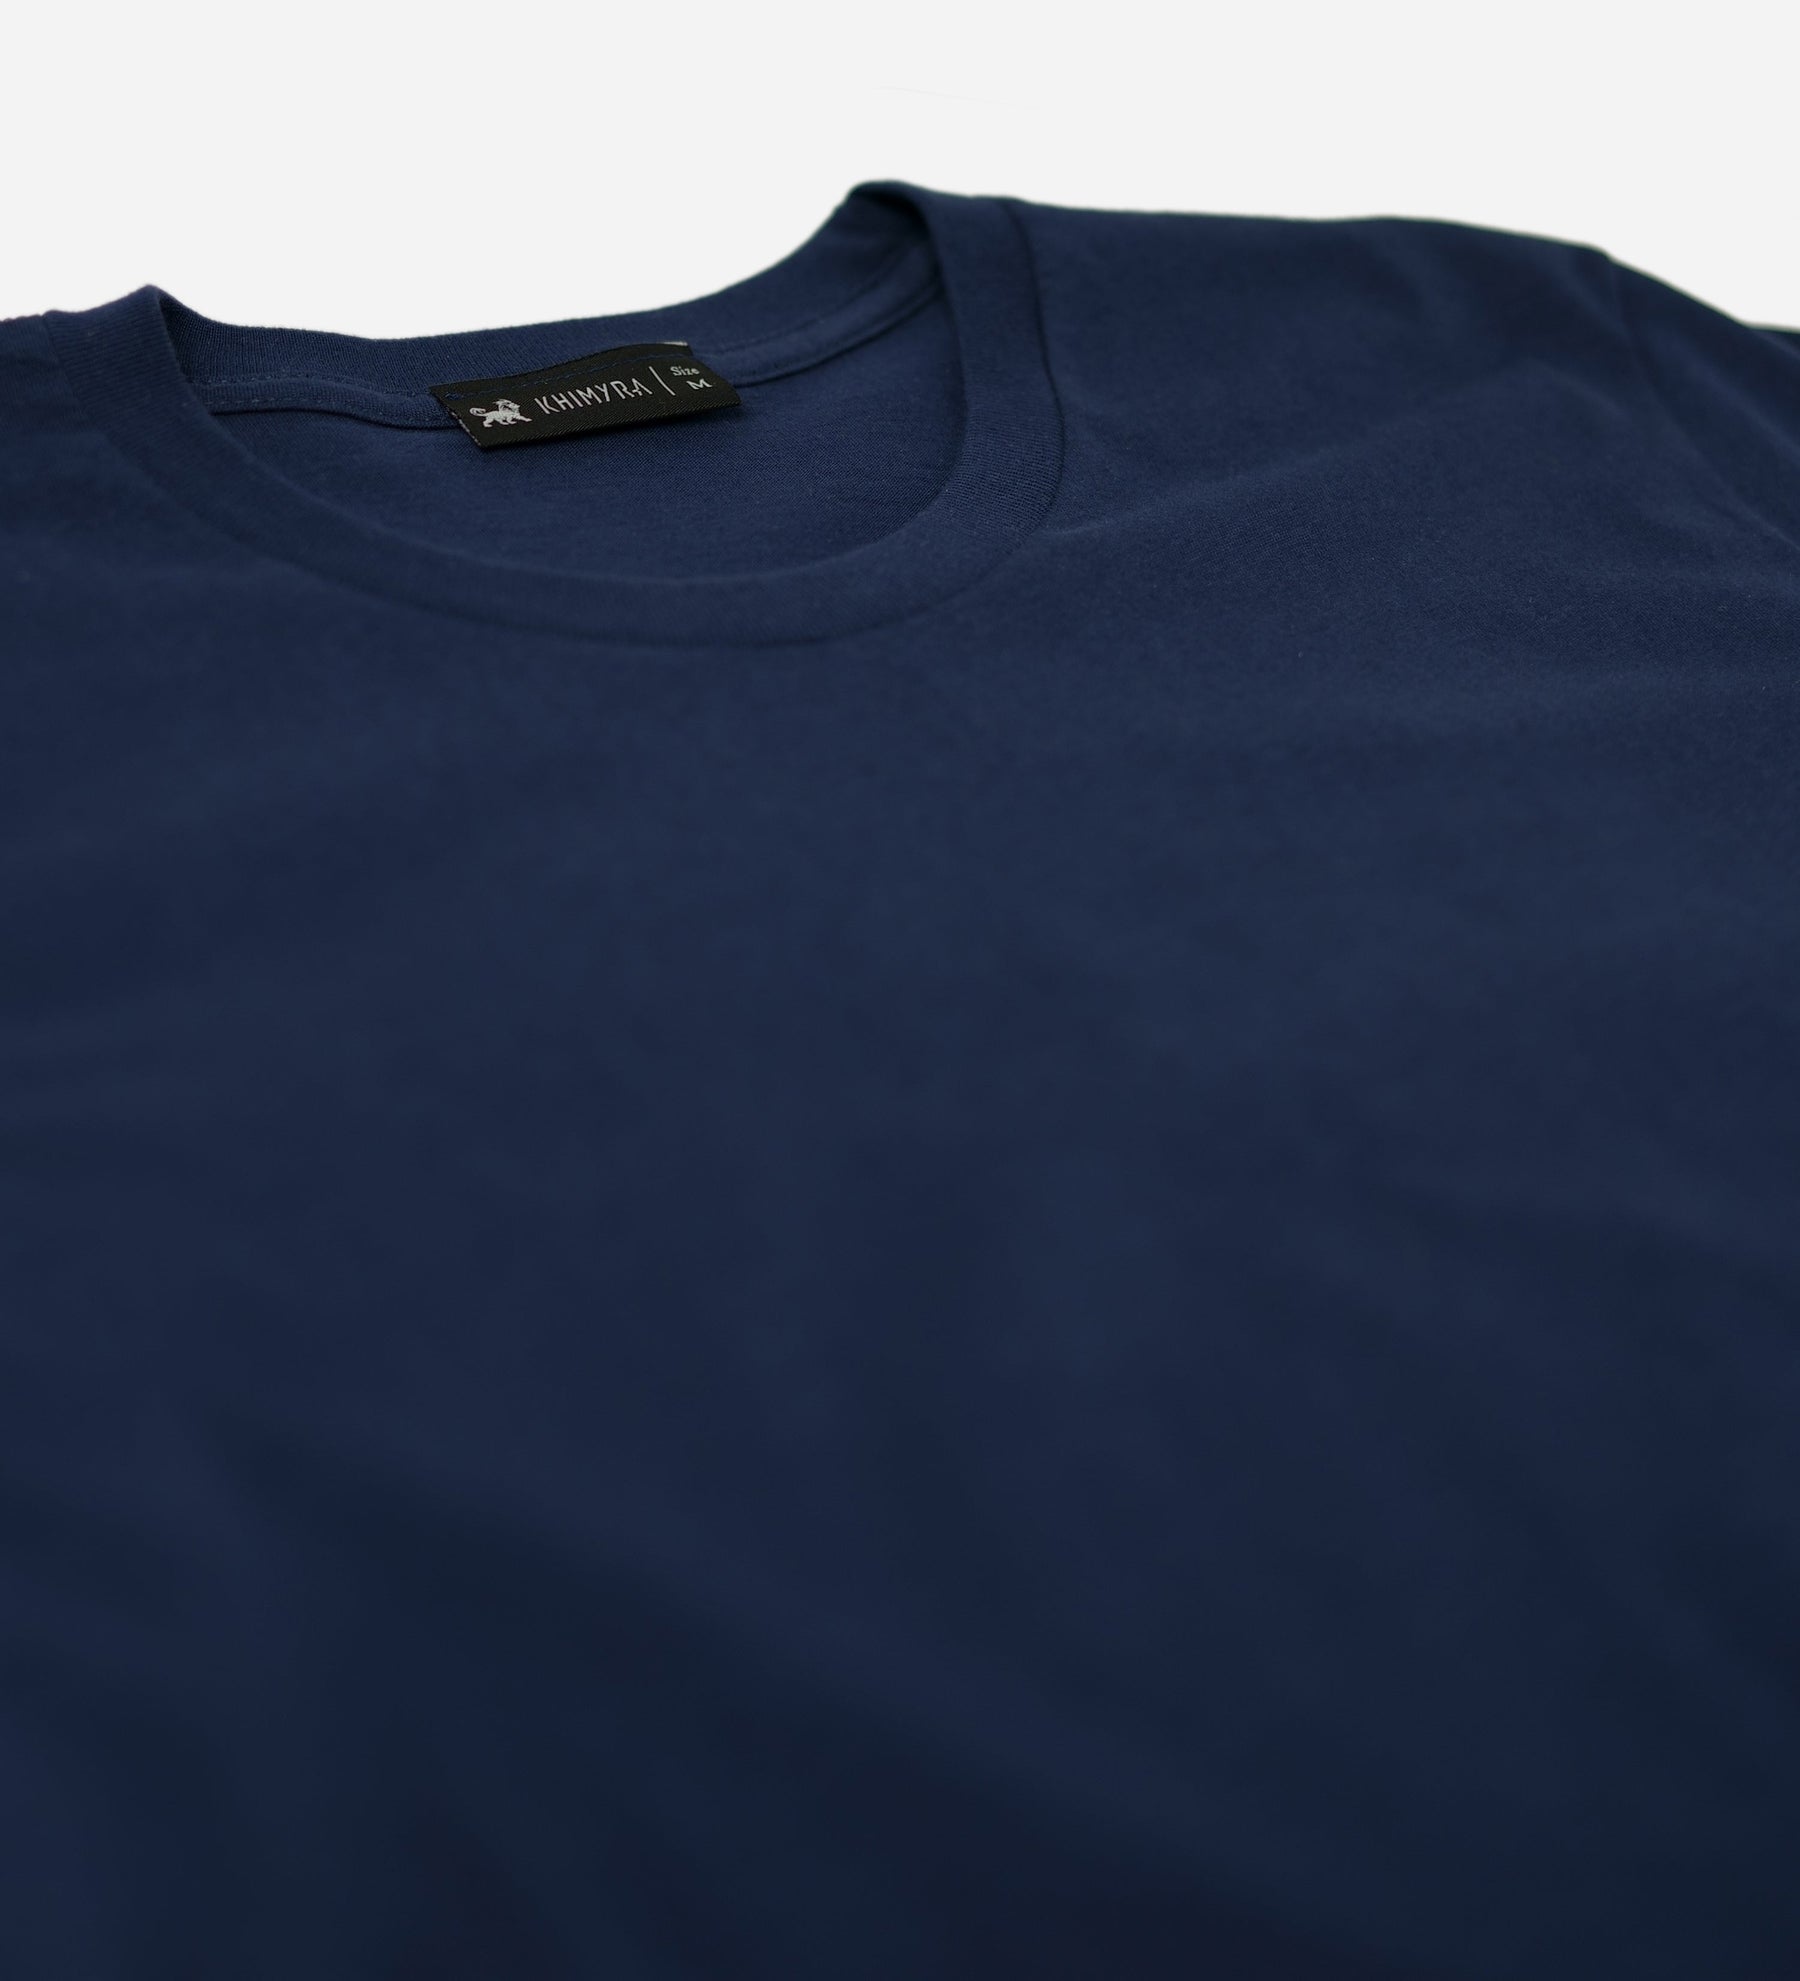 Essential Short Sleeve T-Shirt for Men - Khimyra